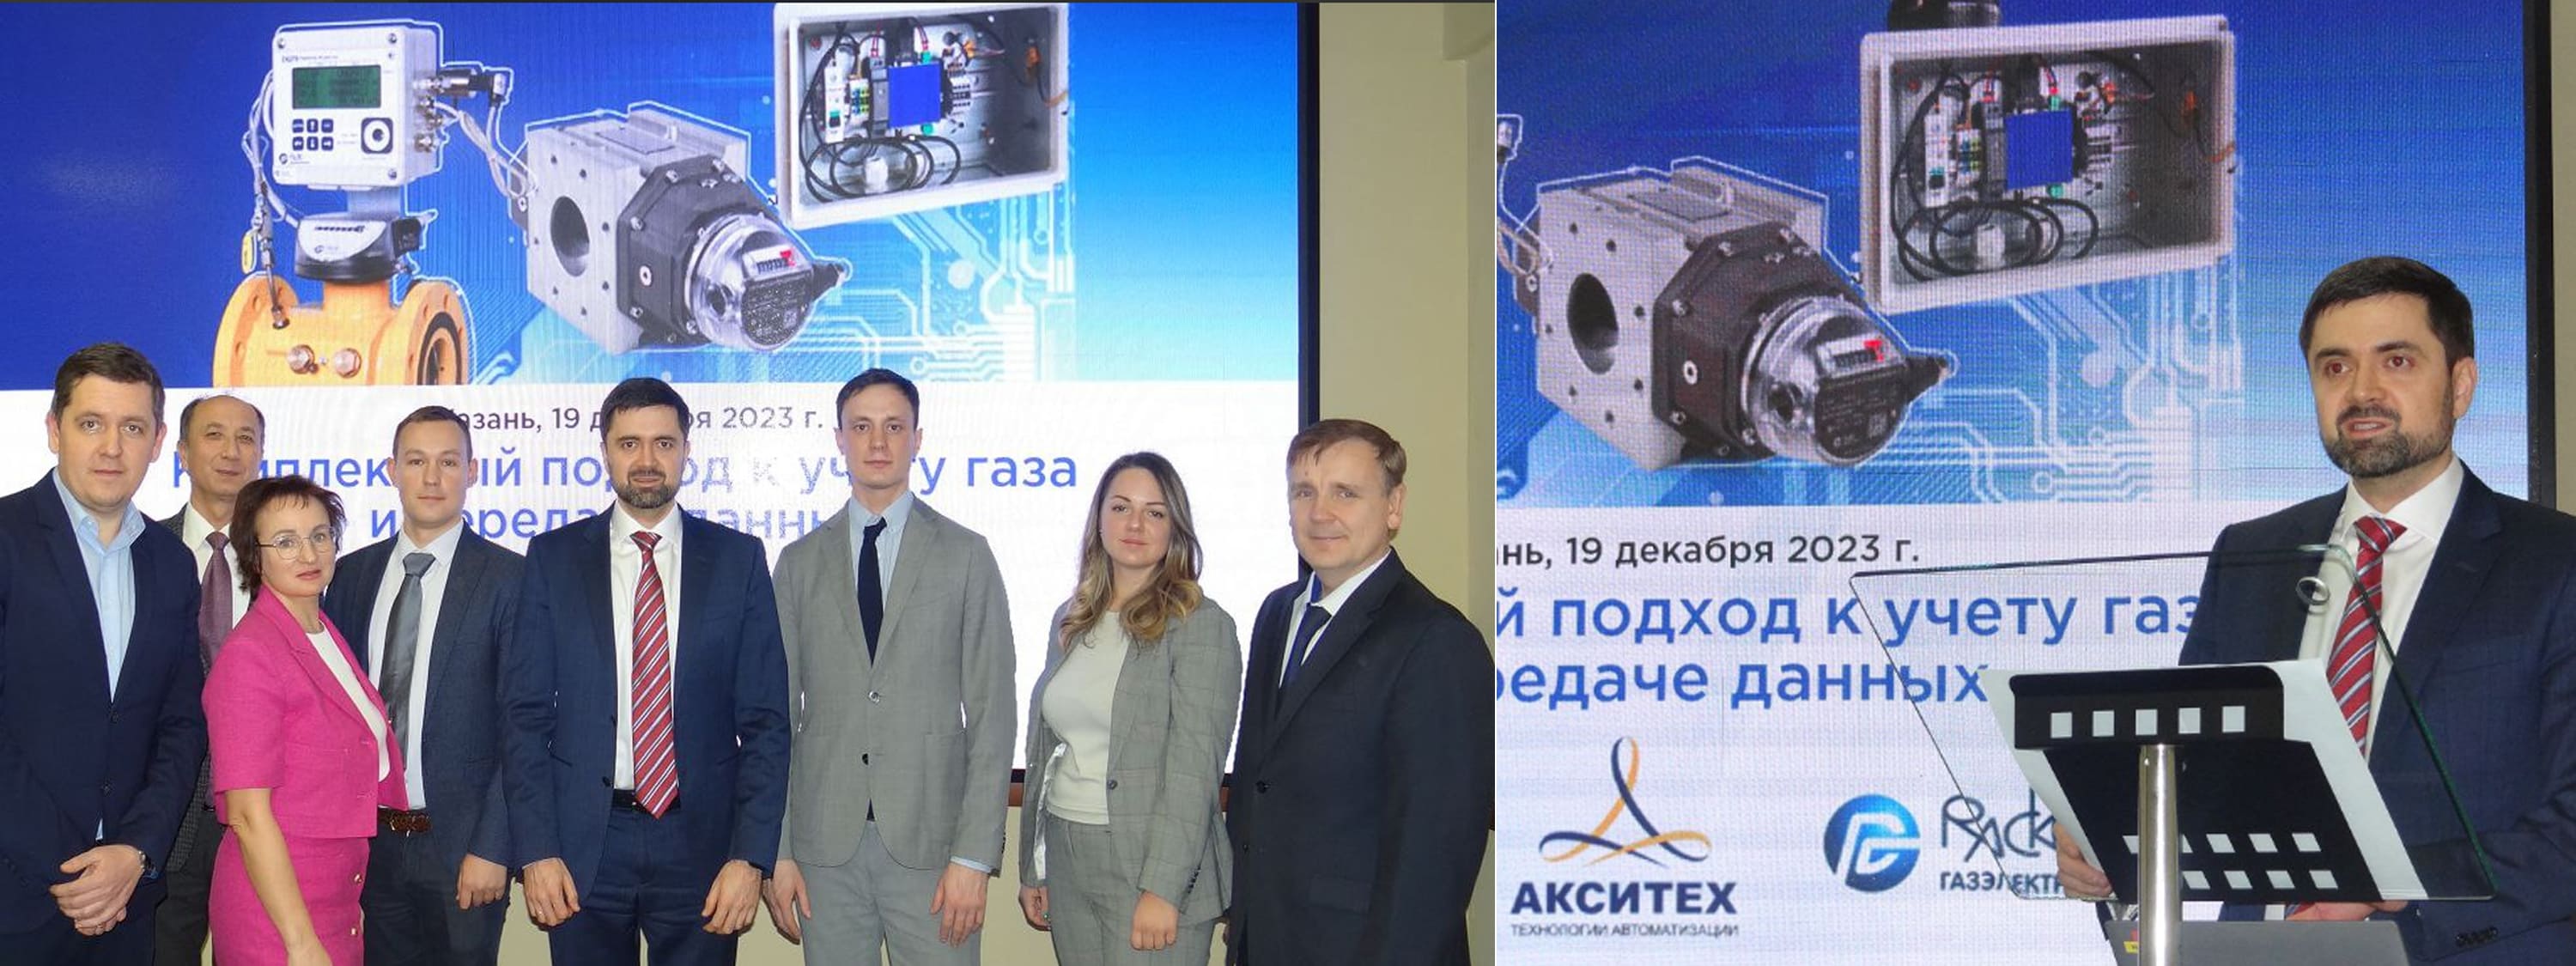 АКСИТЕХ выступил на научно-техническом семинаре «Комплексный подход к учету газа и передаче данных» в Казани